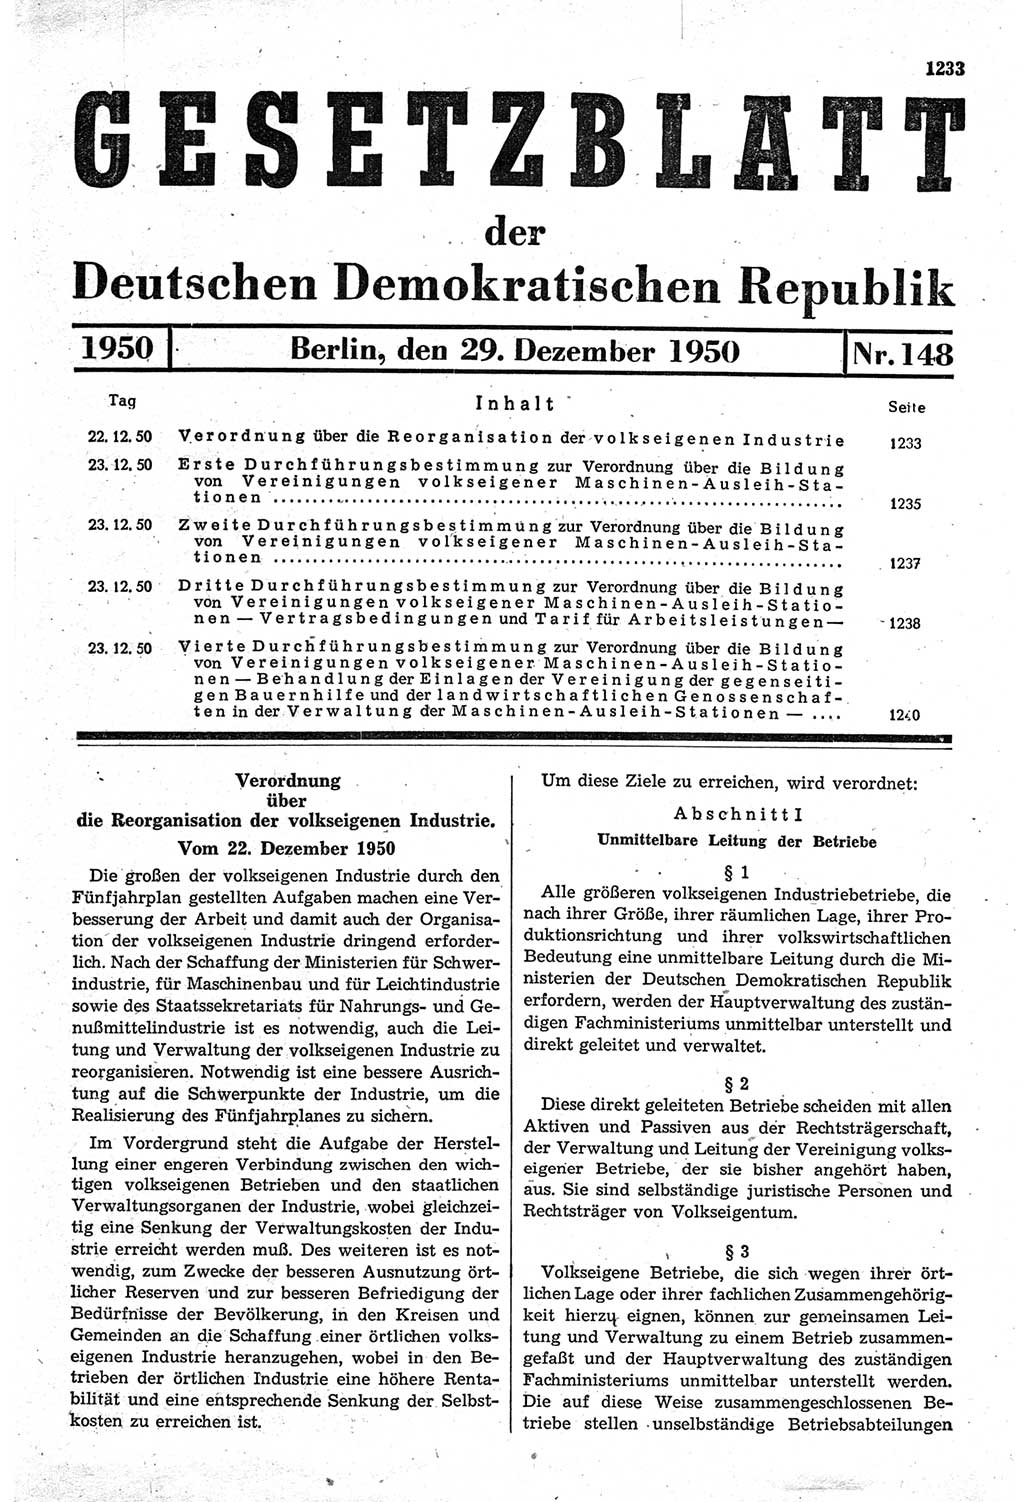 Gesetzblatt (GBl.) der Deutschen Demokratischen Republik (DDR) 1950, Seite 1233 (GBl. DDR 1950, S. 1233)